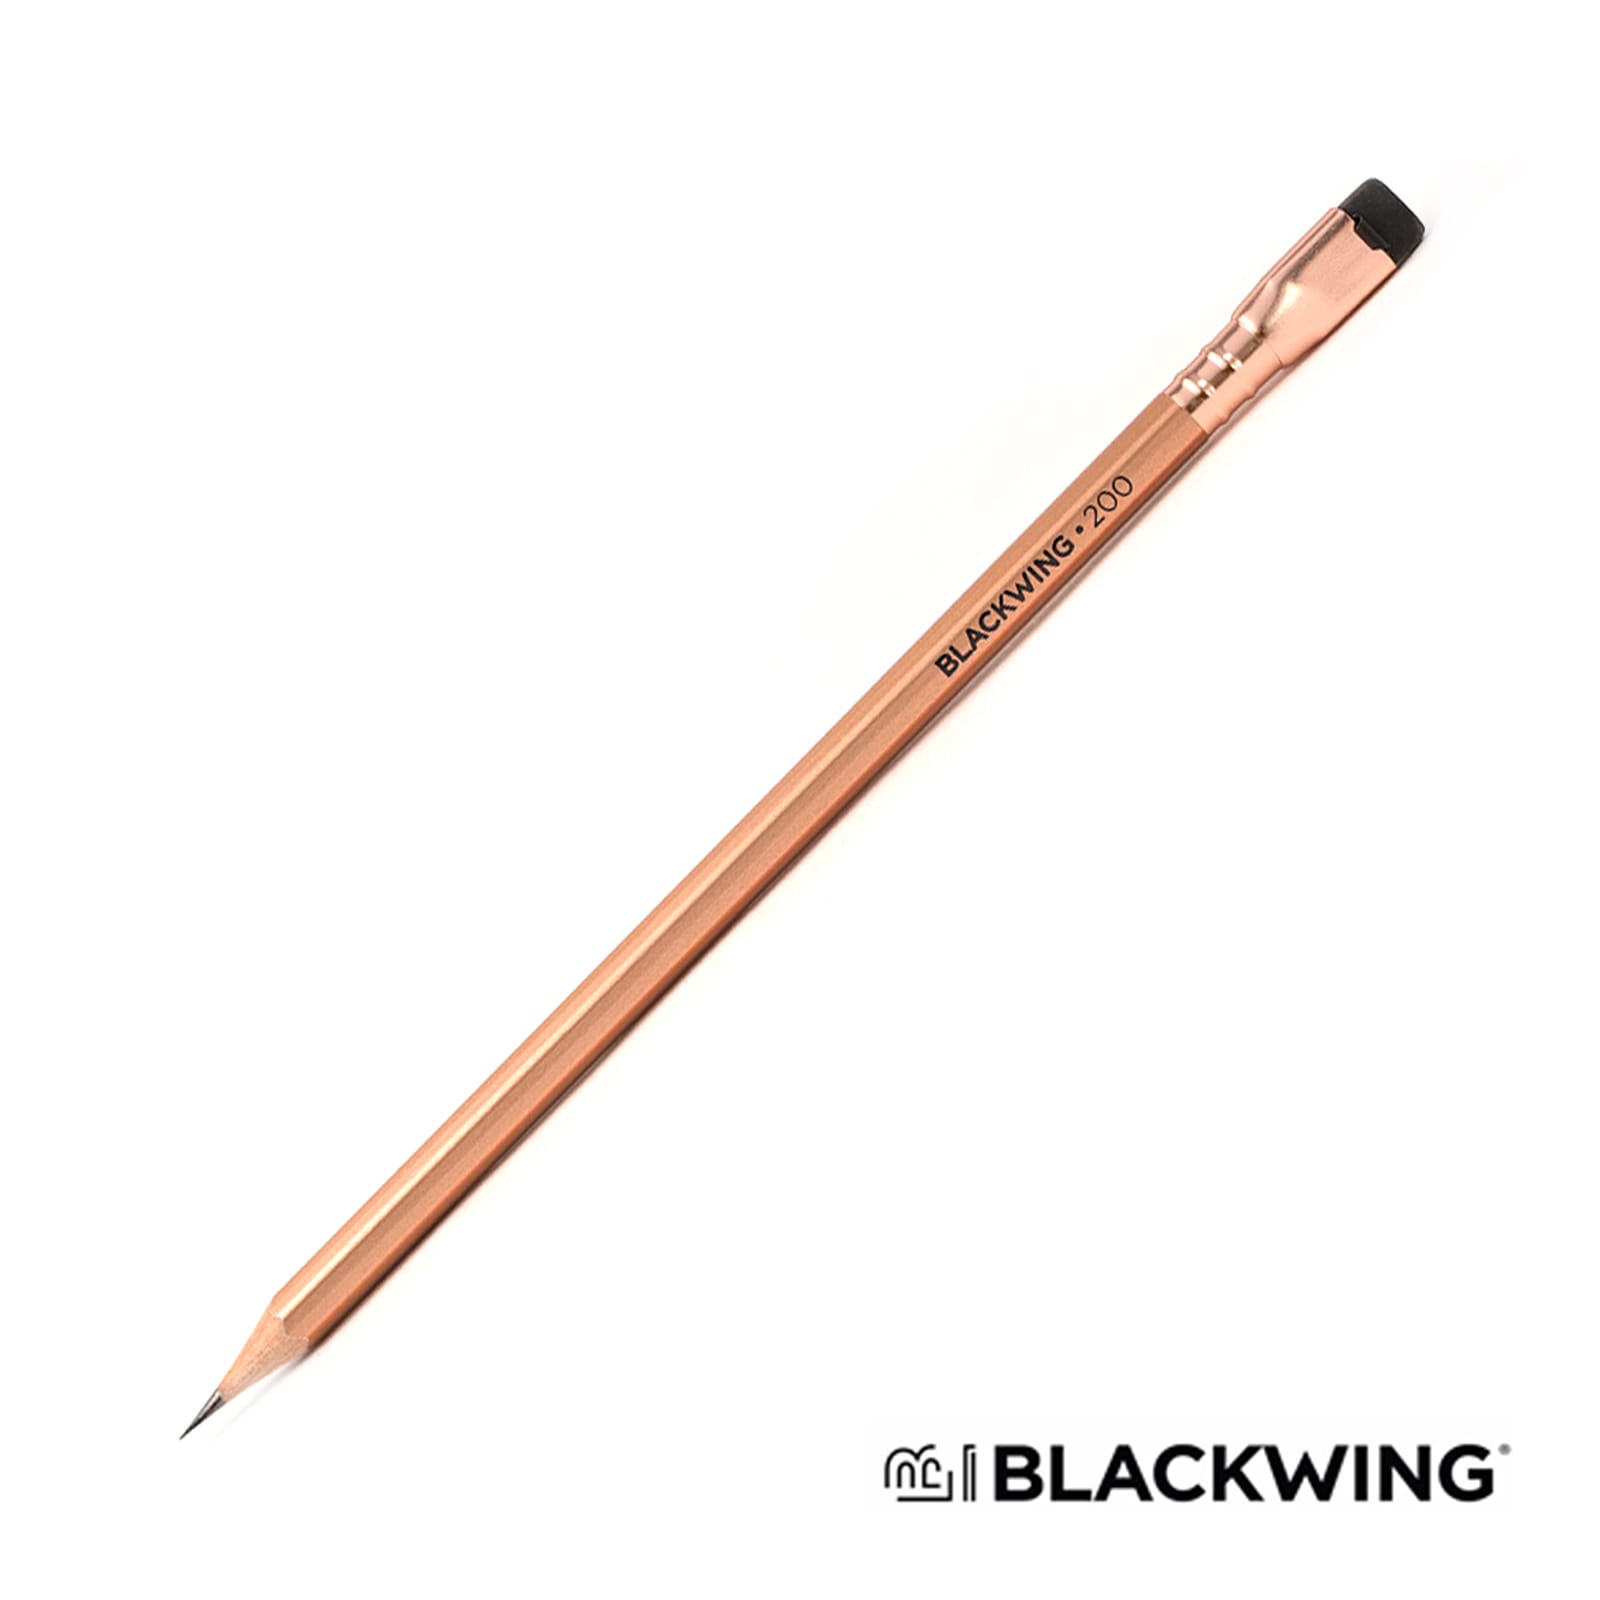 BLACKWING（ブラックウィング） 限定品 鉛筆 ブラックウィング VOL.200 106785